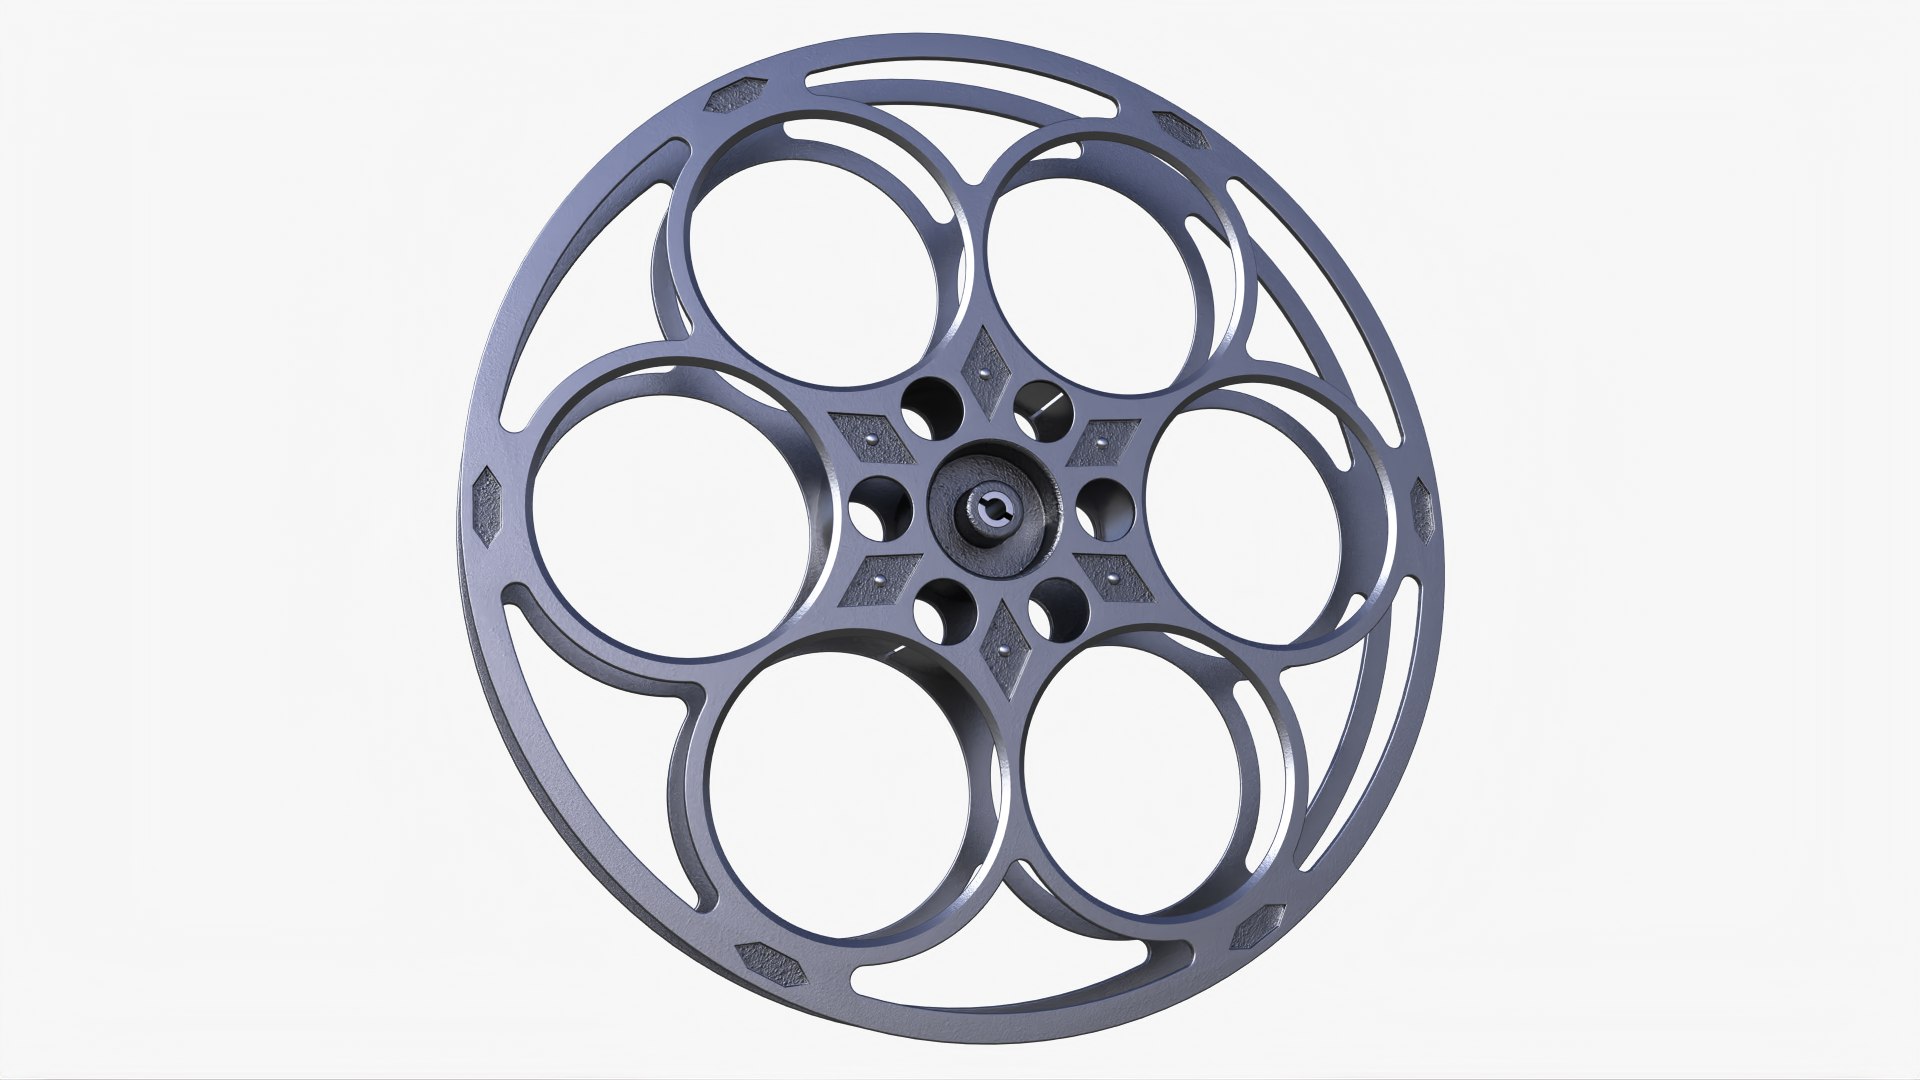 Goldberg Brothers 35mm Film Reel 2 3D Model - TurboSquid 1863652